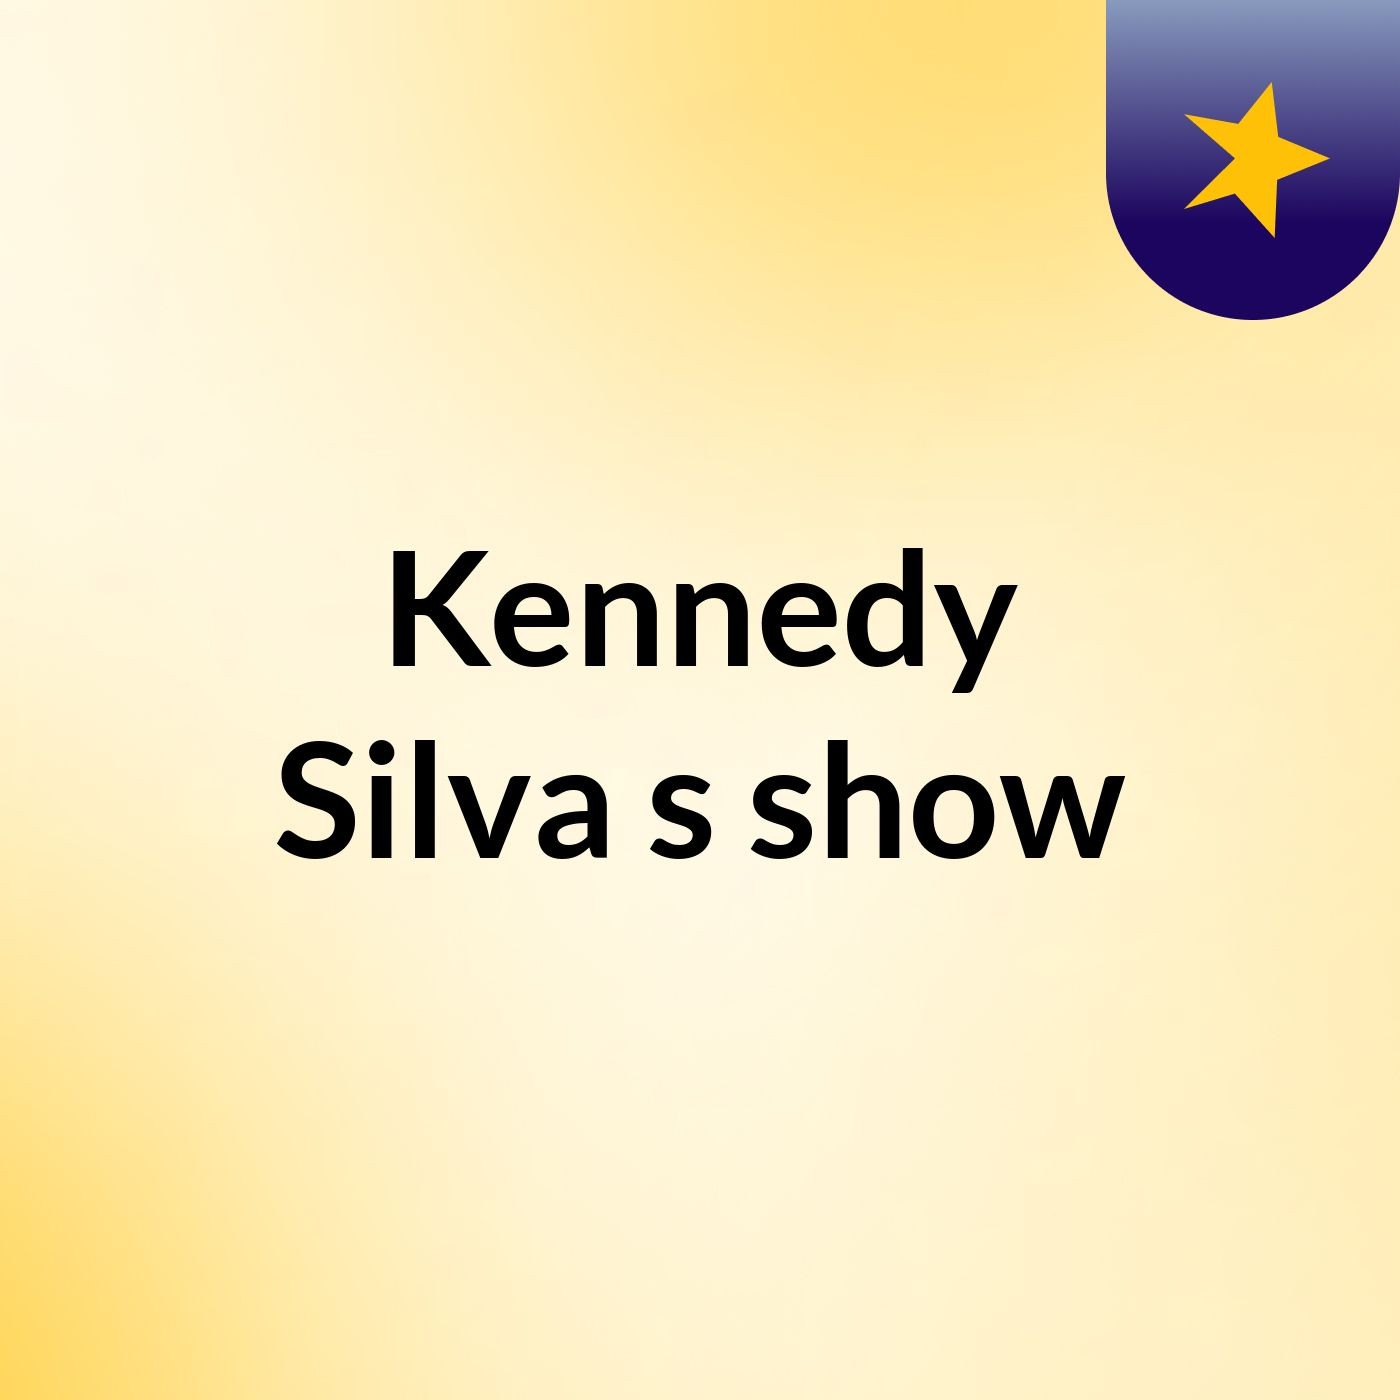 Kennedy Silva's show